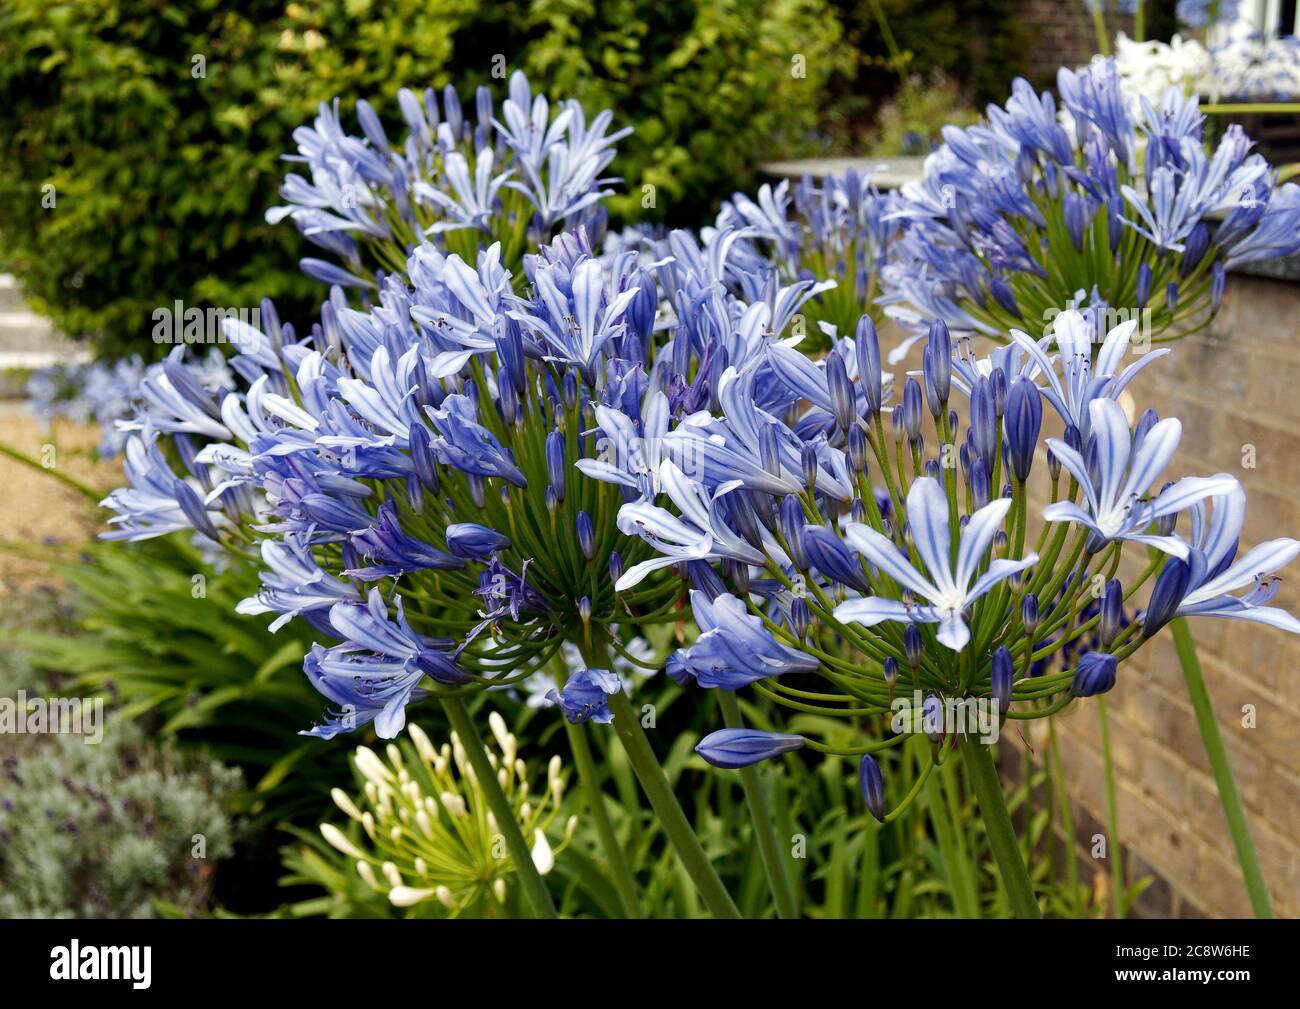 Eine Sorte von blauem Agapanthus (Agapanthus africanus), die in einem Topf in einem großen Garten wächst. Afrikanische Lilie und Nillilie sind alternative Namen. Stockfoto